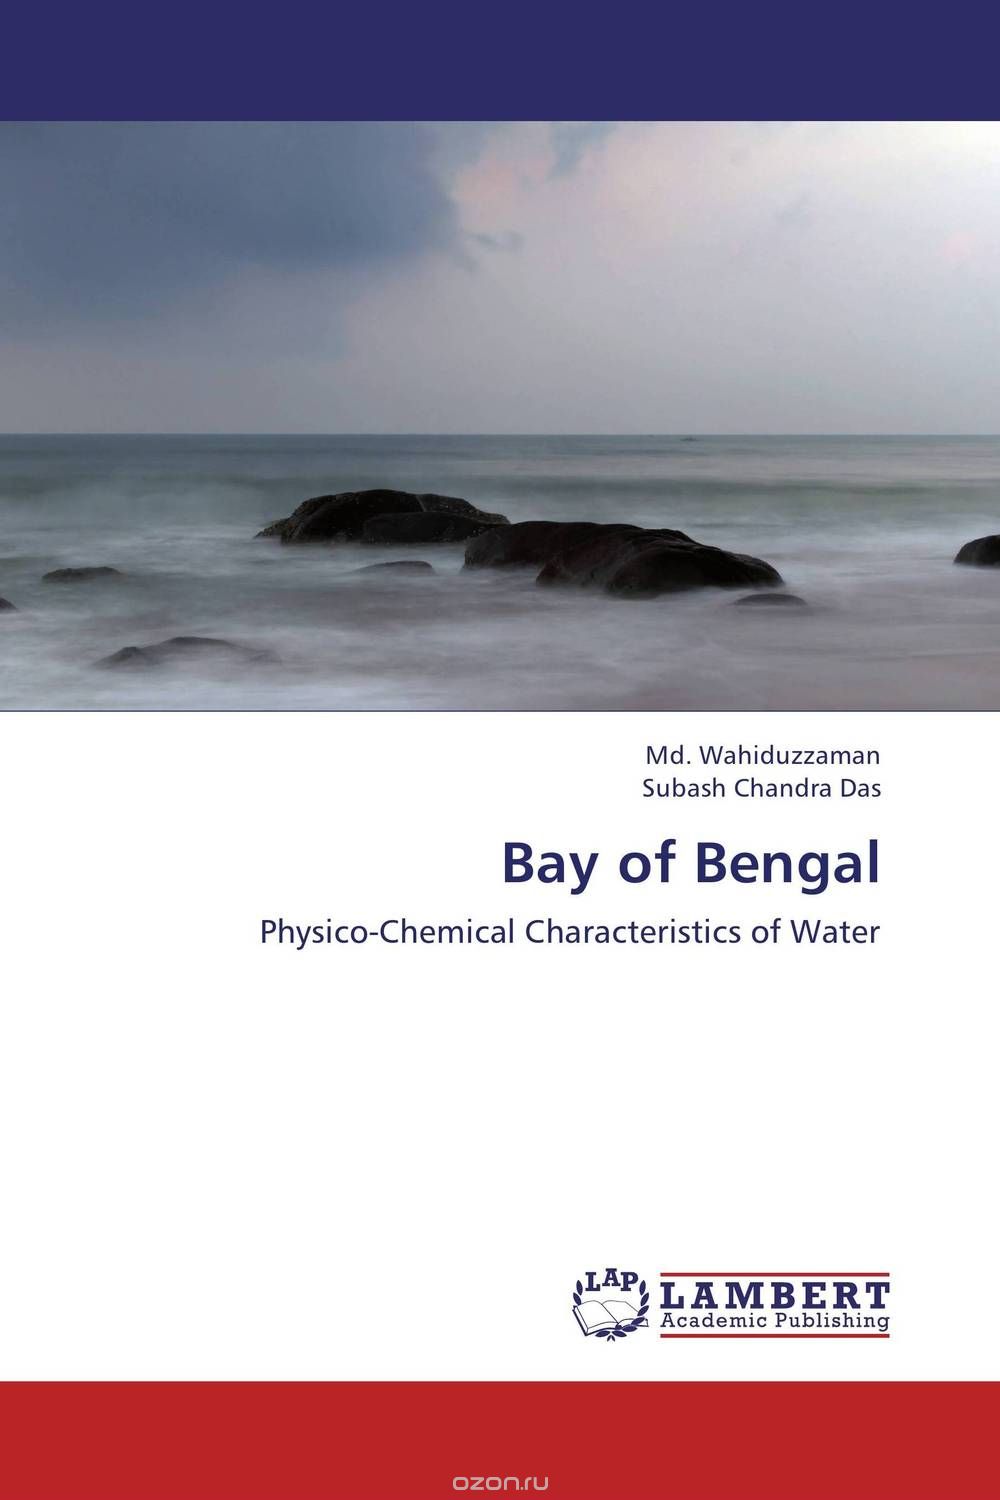 Скачать книгу "Bay of Bengal"